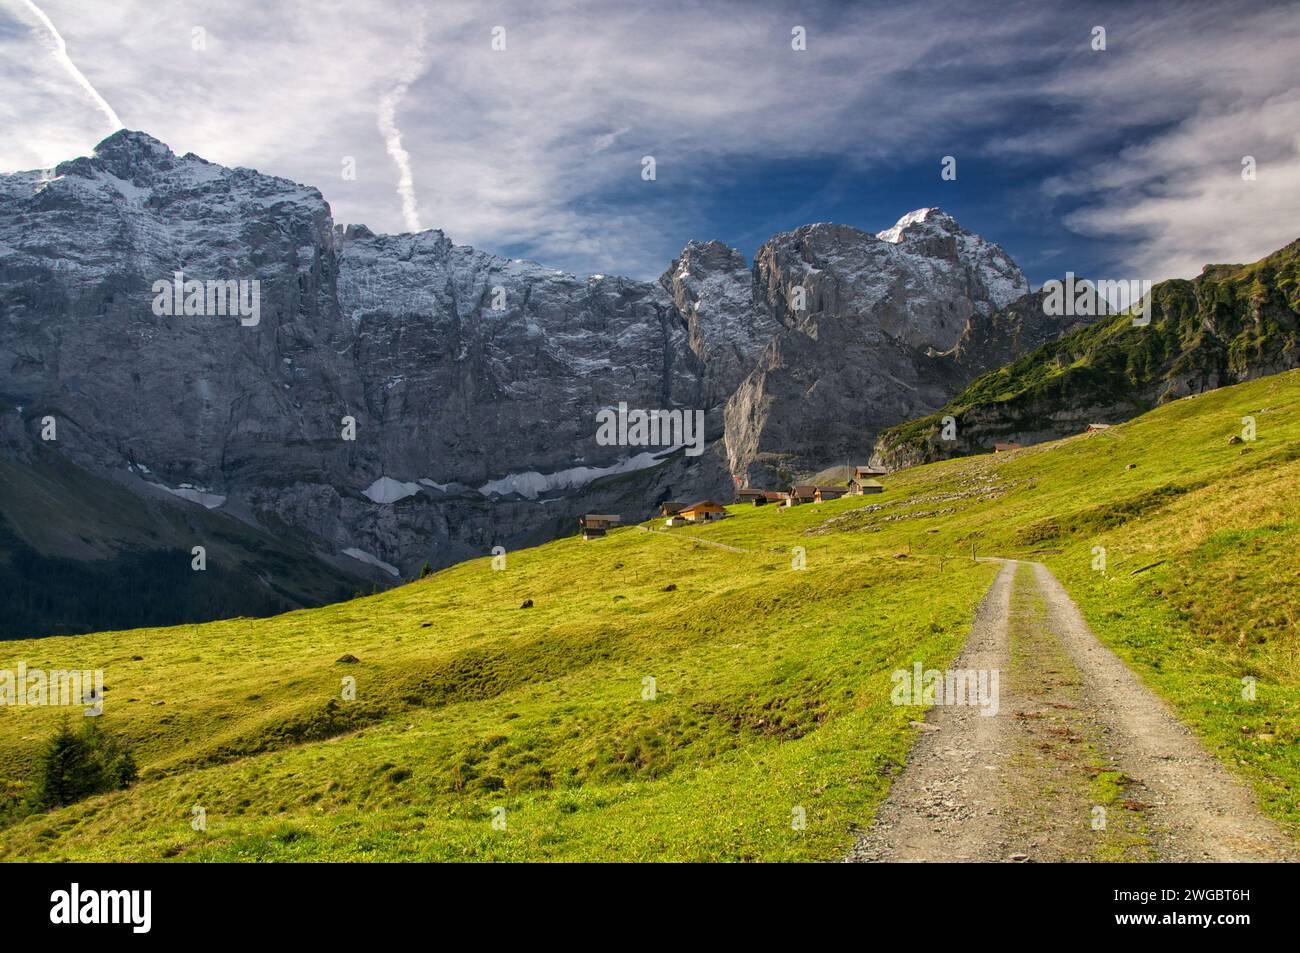 Route à travers la campagne rurale alpine, Sittlisalp, Uri, Suisse Banque D'Images